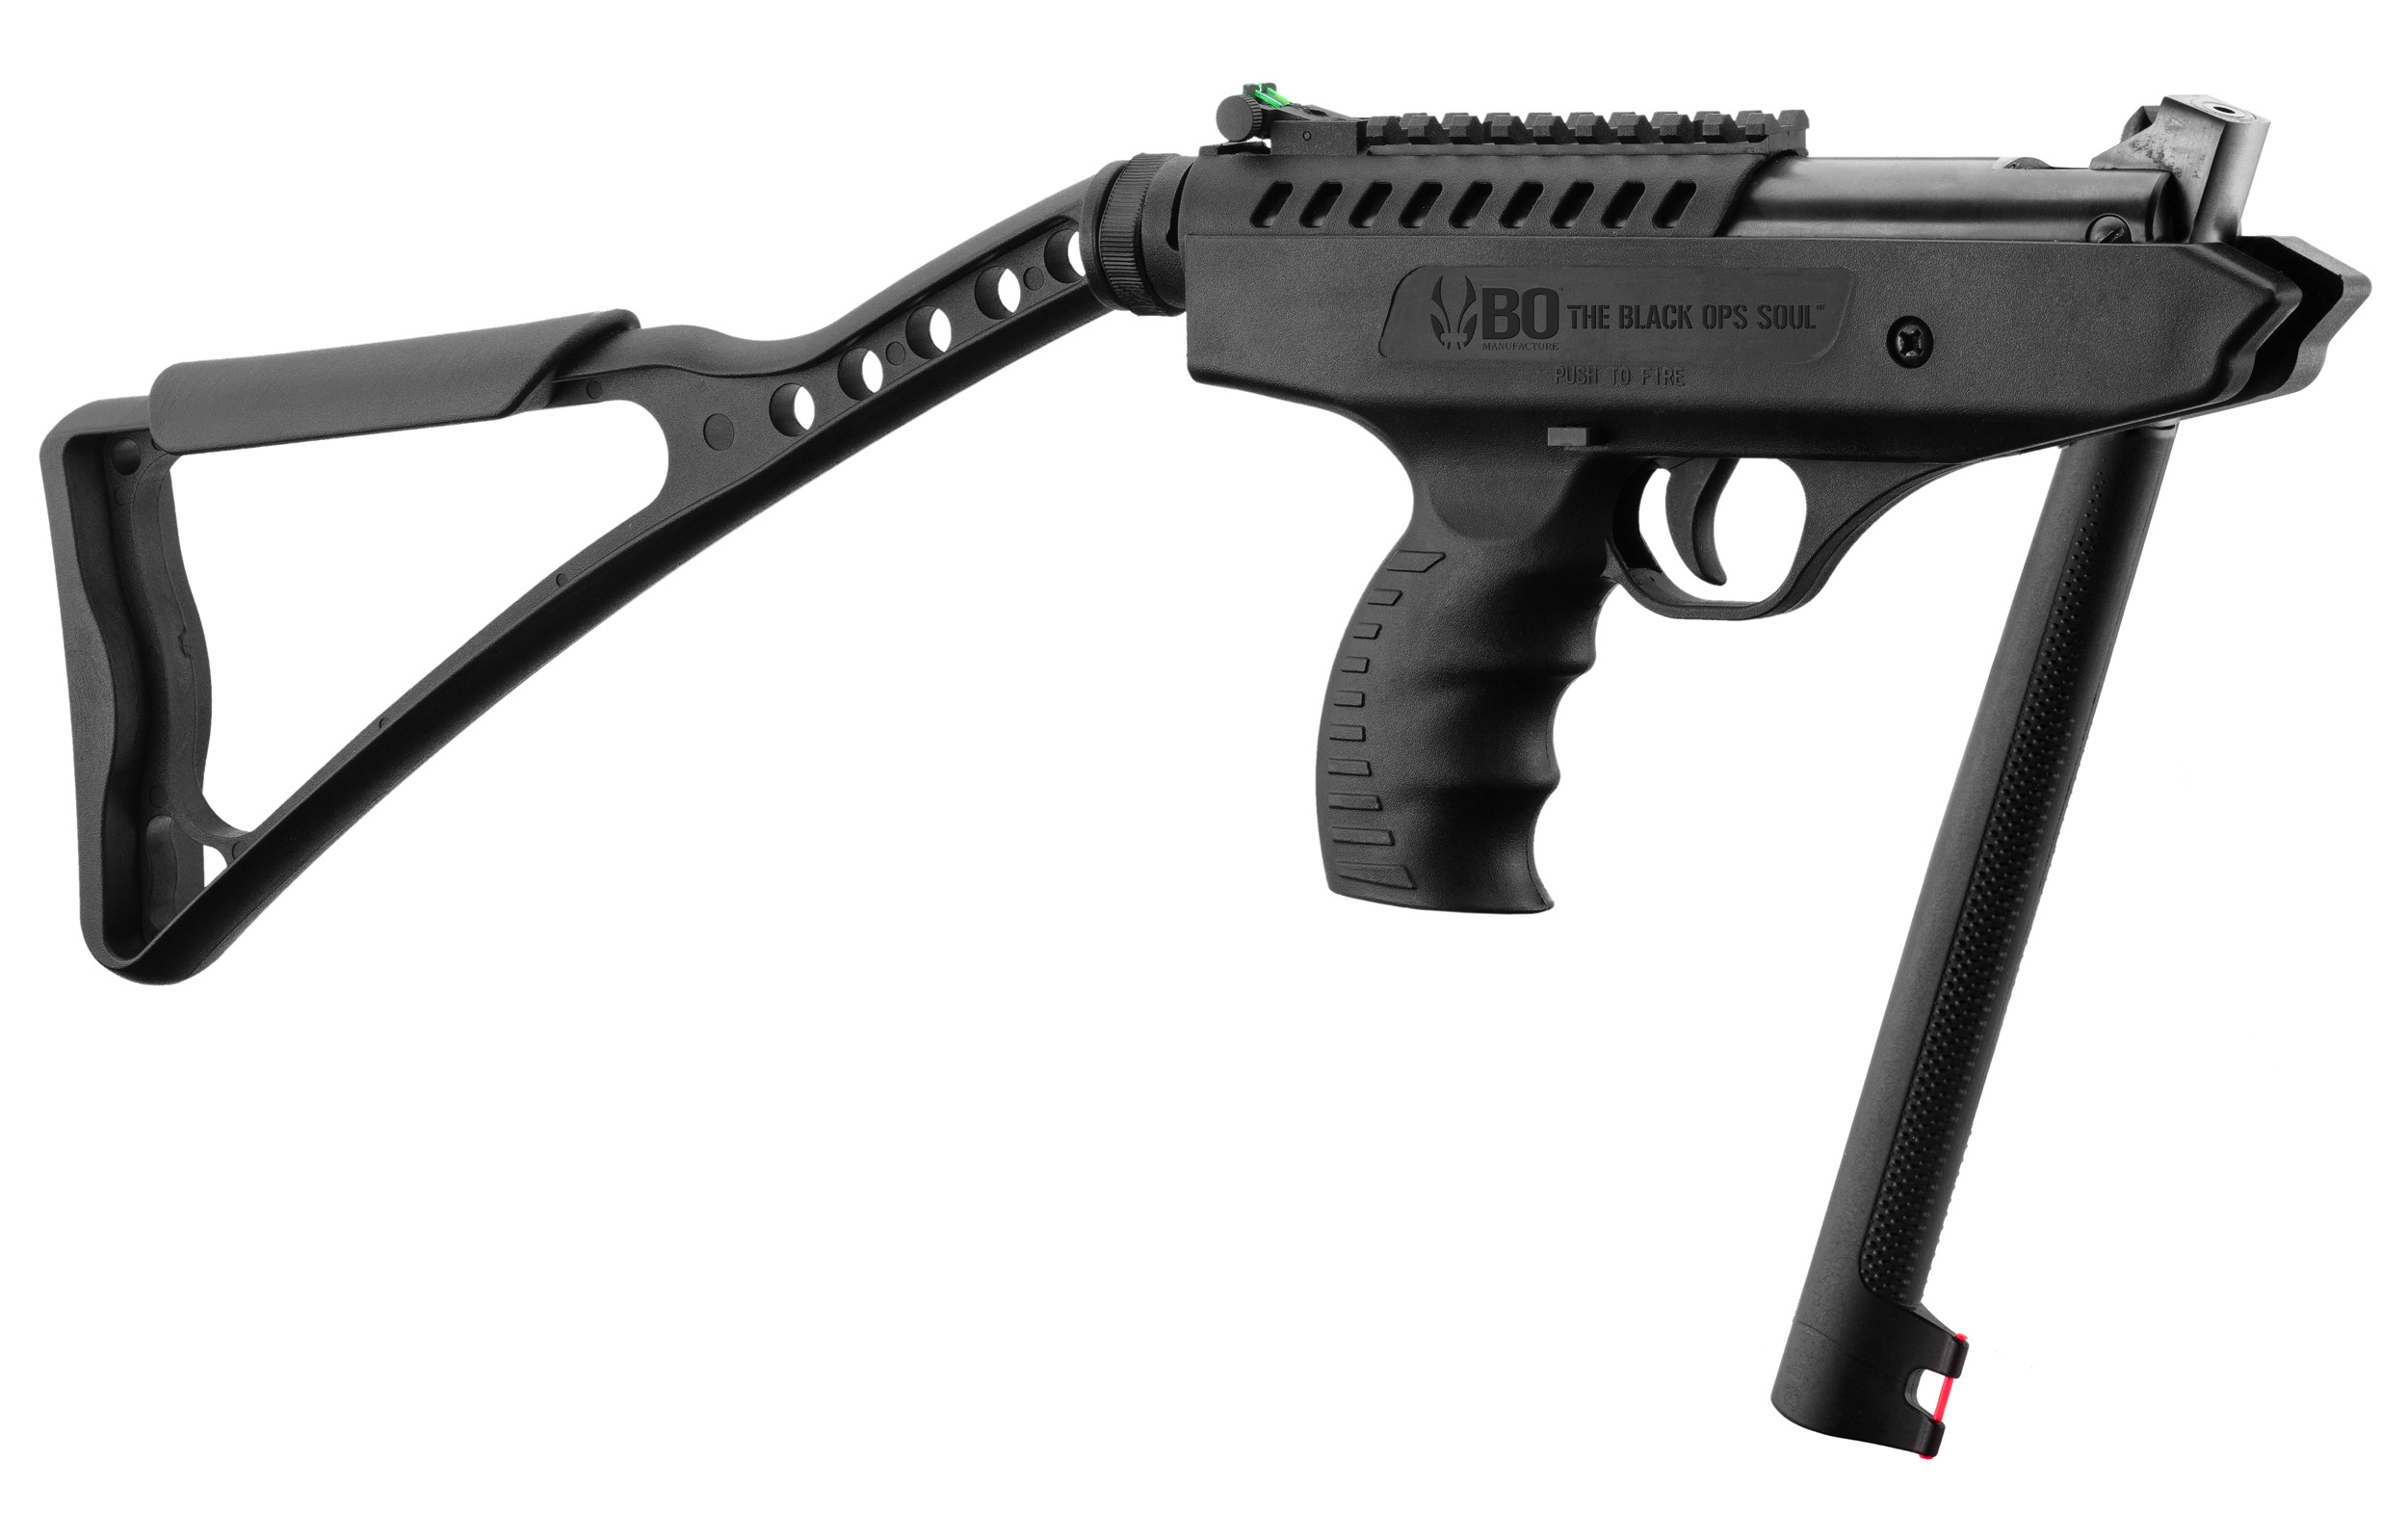 Test du pistolet à air comprimé XP4 de Stoeger